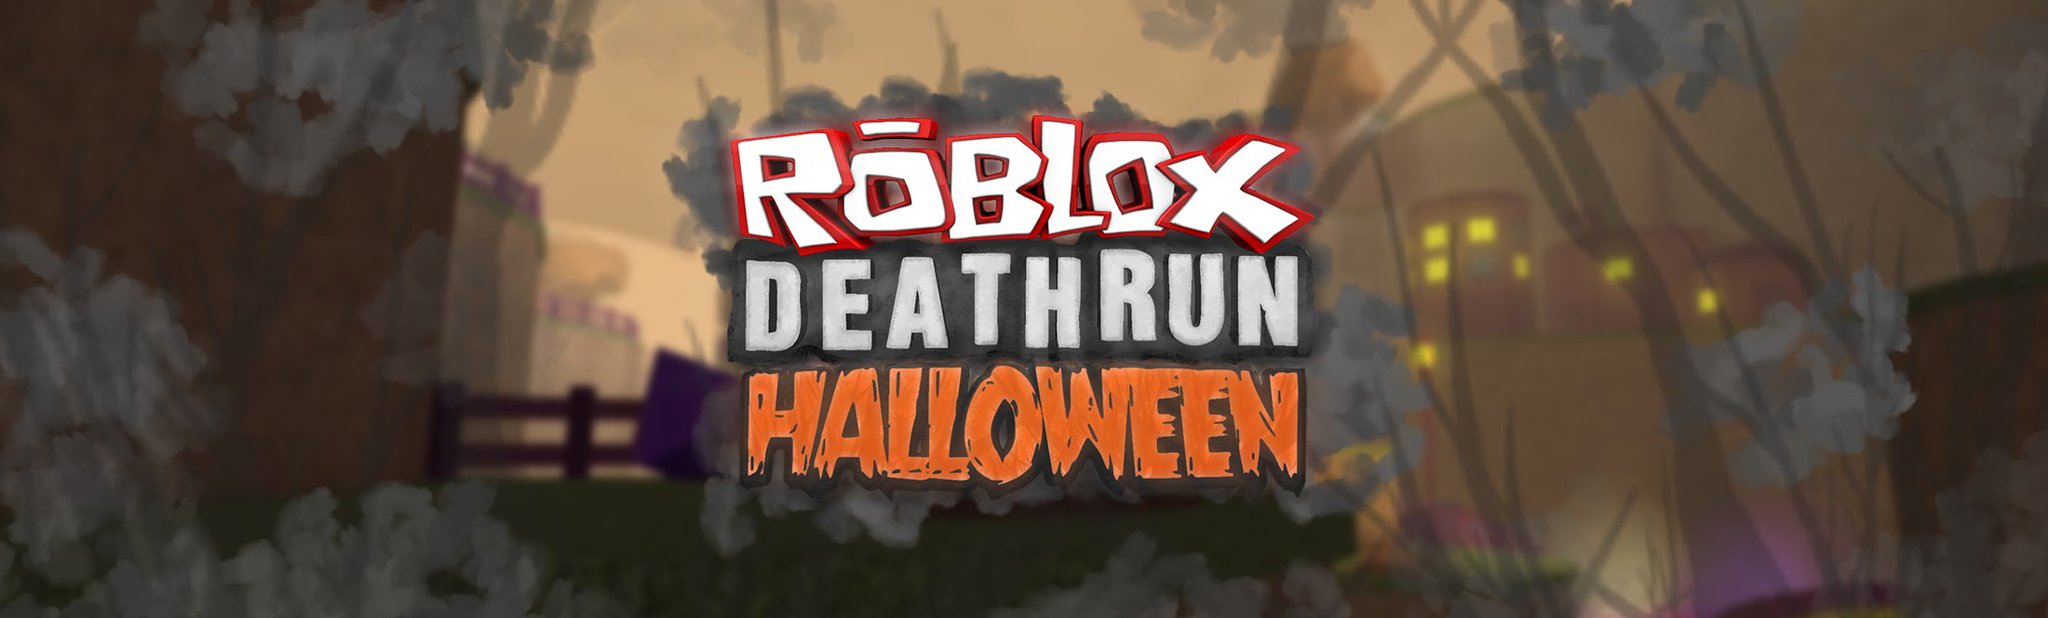 Roblox Deathrun Codes Twitter